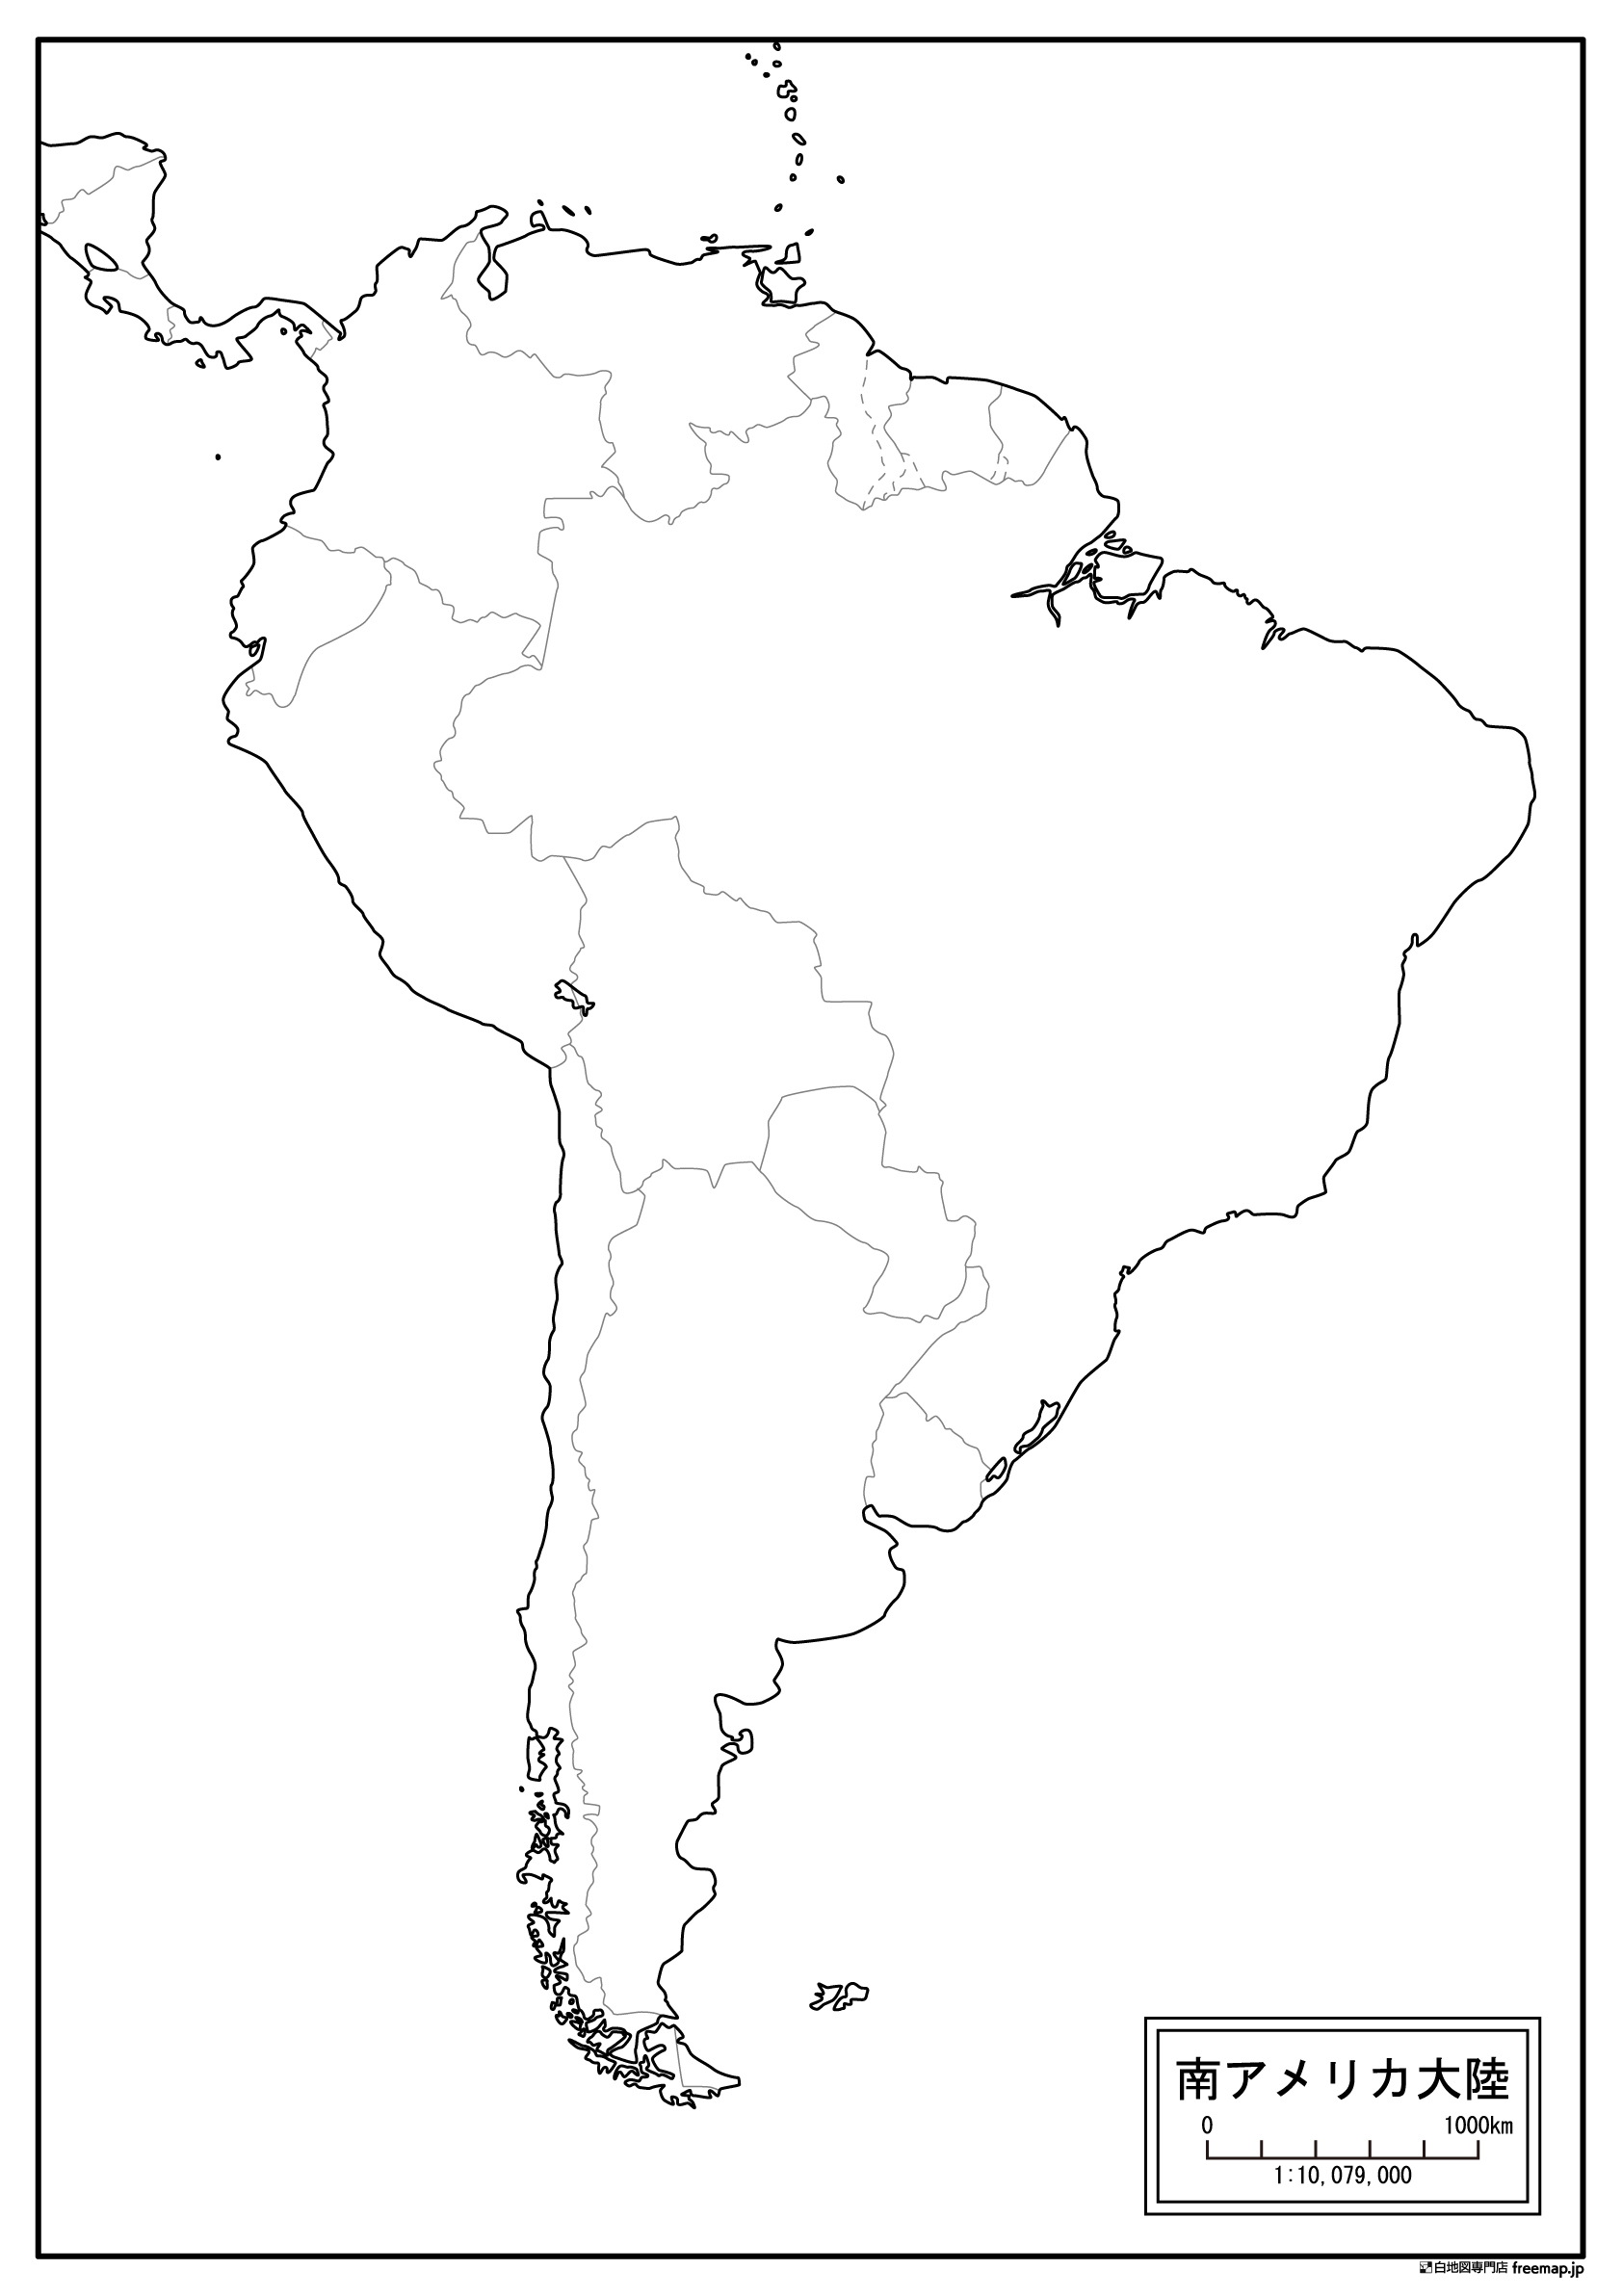 南アメリカ大陸のサムネイル